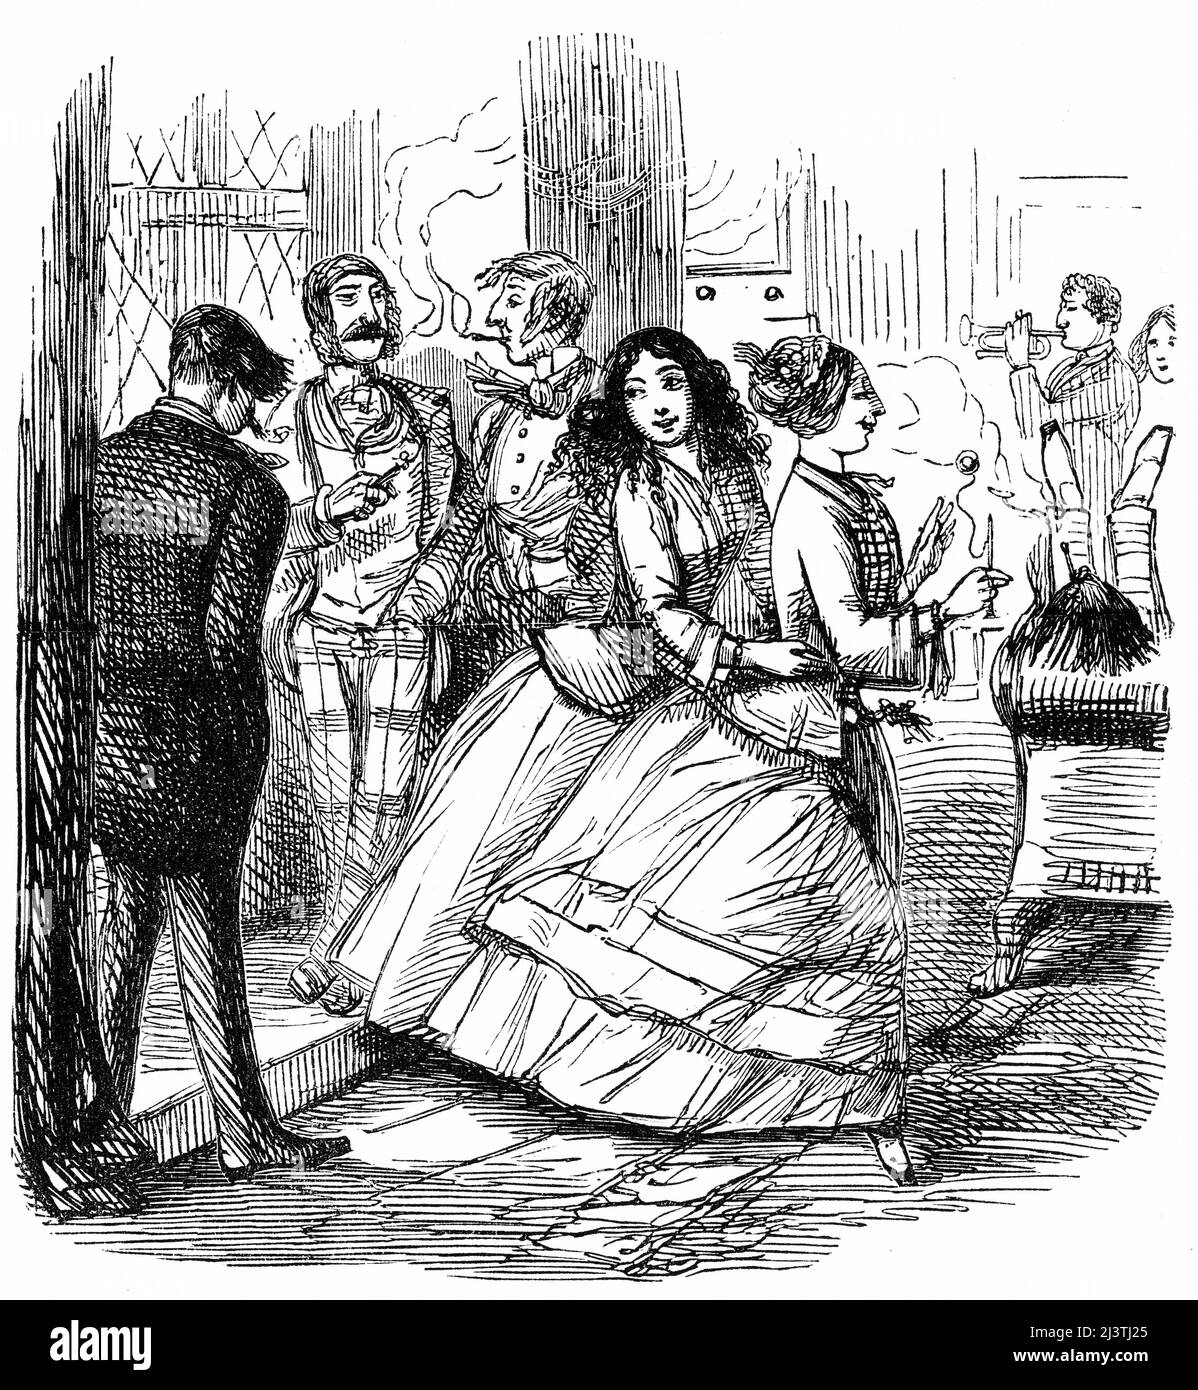 Femmes à un rassemblement social dans la société de la classe supérieure, Angleterre, 1850s. Gravure en acier par John Leech de la tournée sportive de M. Sponge de Robert Smith Surtees, vers 1850 Banque D'Images